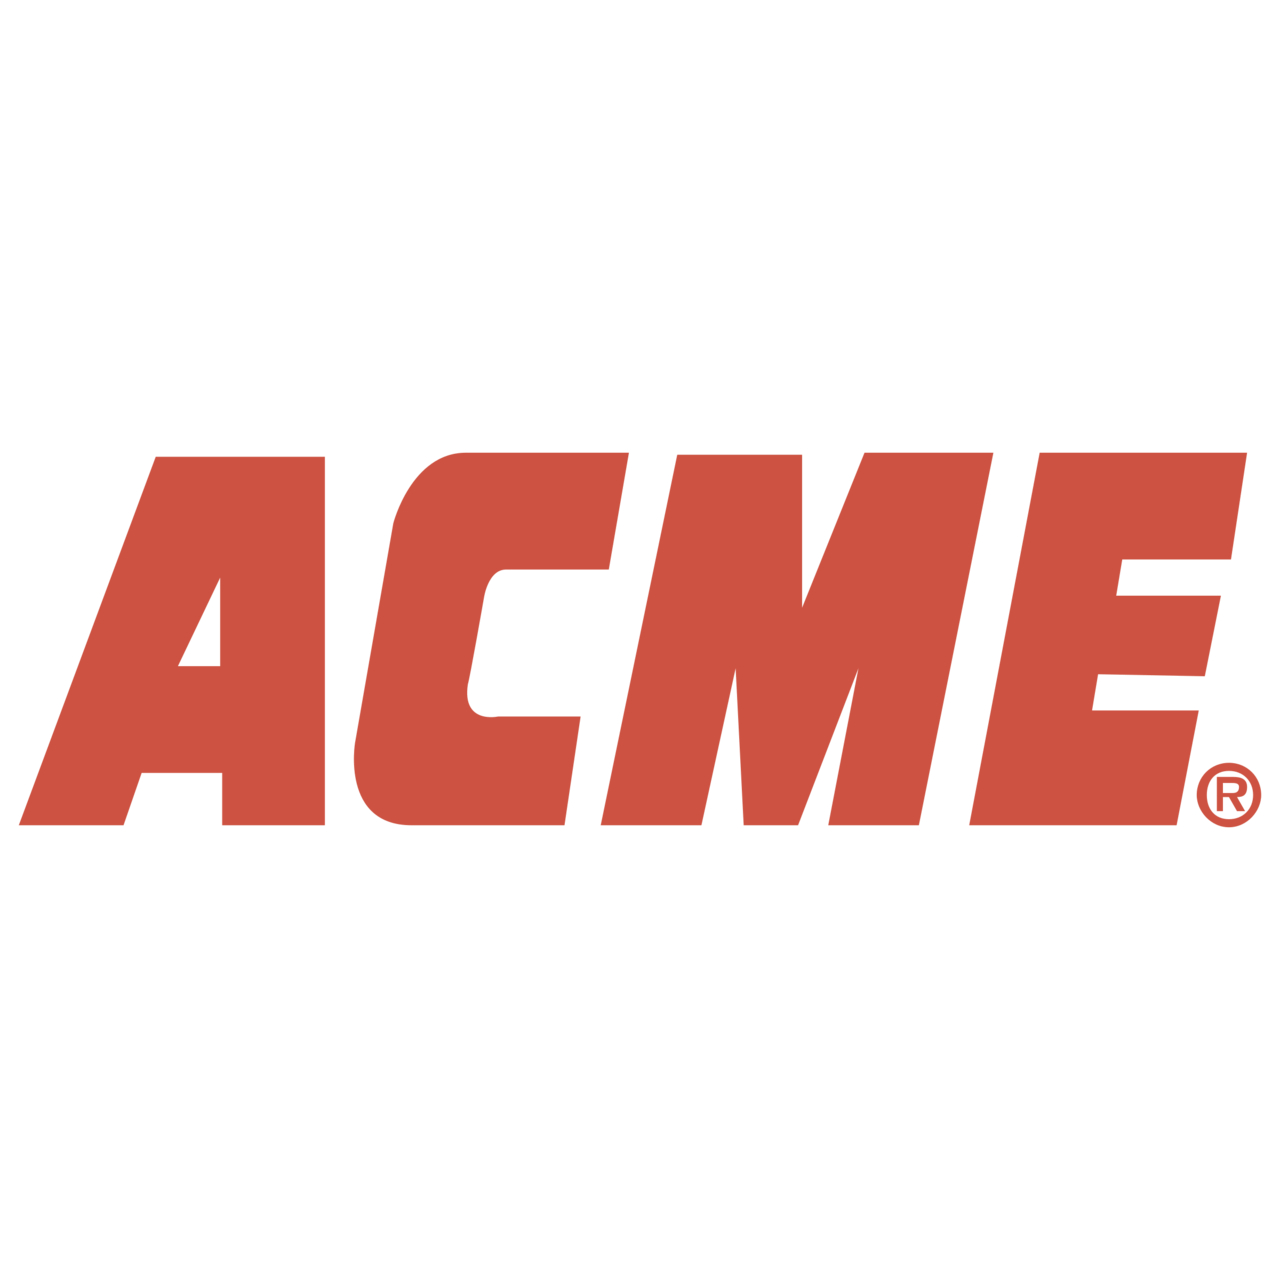 ACME - sprrawdź wszystkie promocje